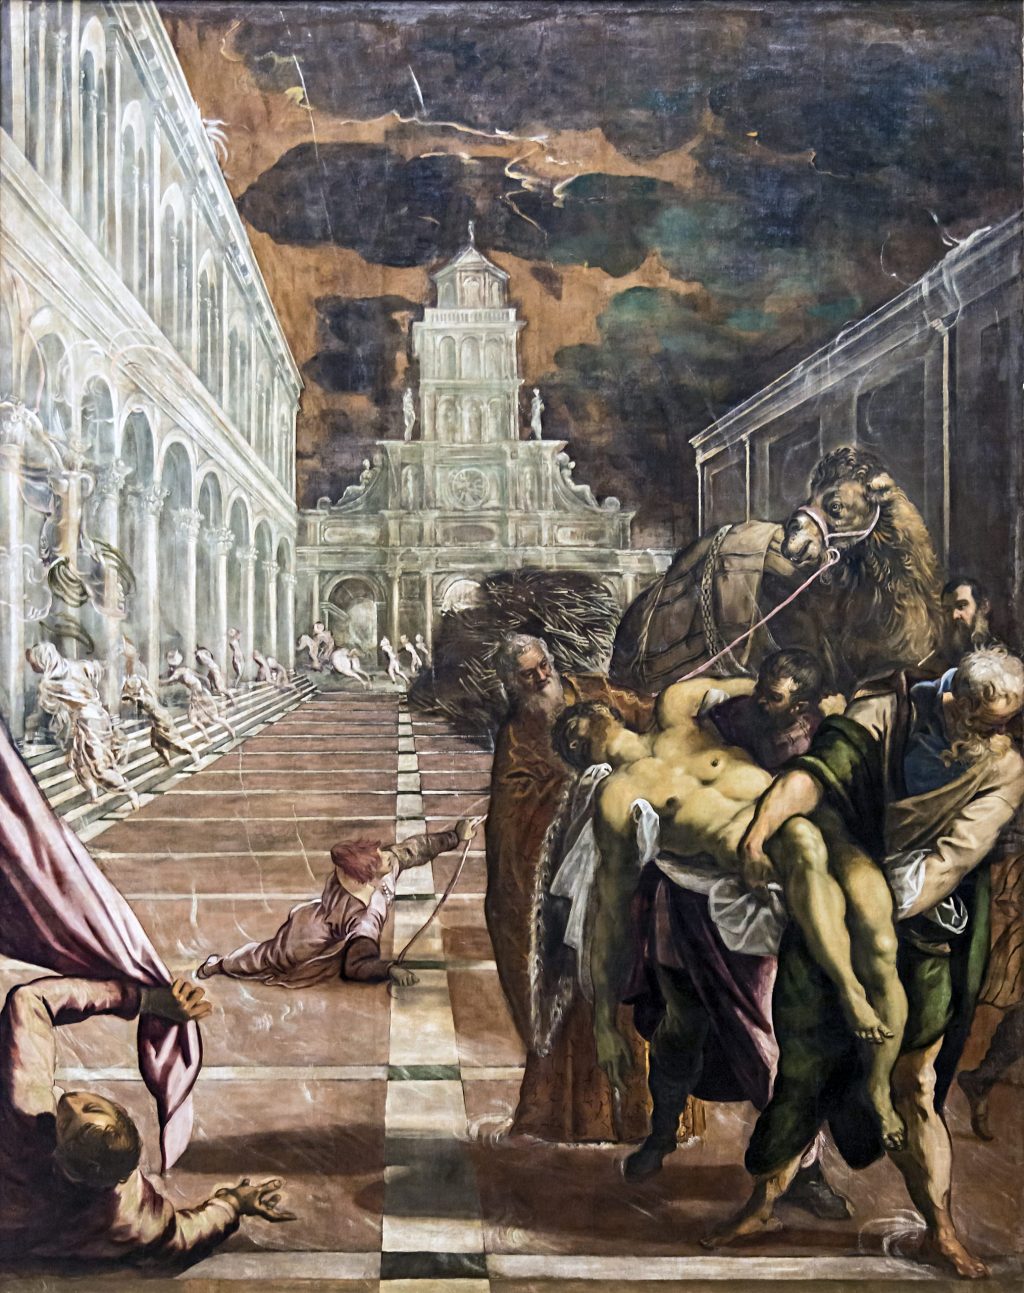 Venezia, Gallerie dell'Accademia, Tintoretto, Trafugamento del corpo di san Marco